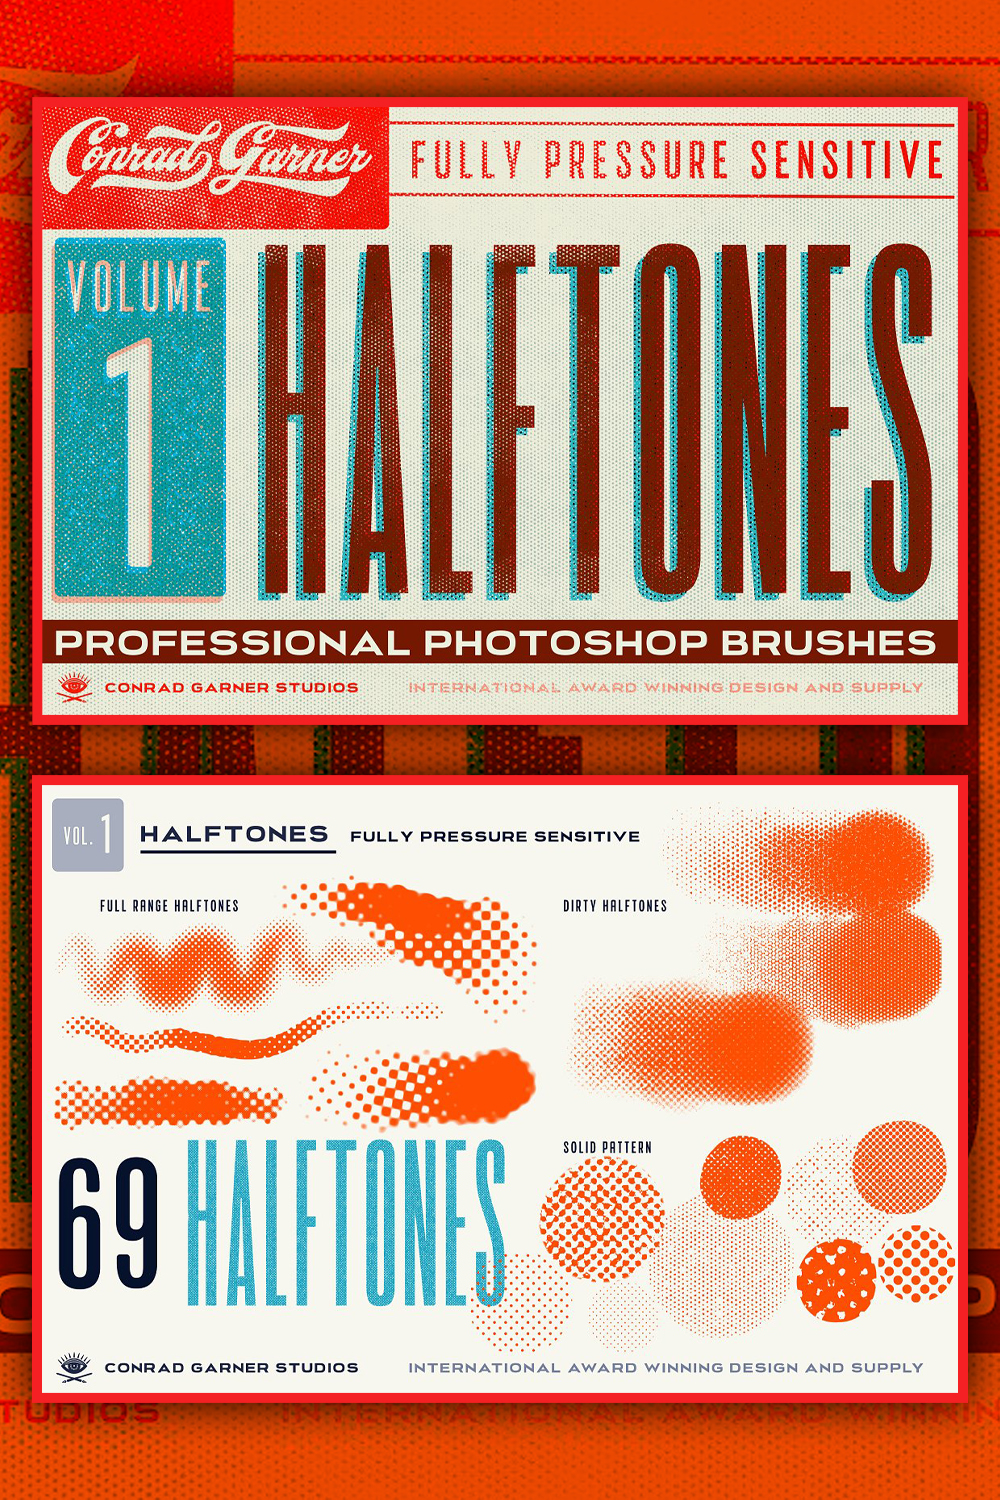 Halftone brushes photoshop of pinterest.